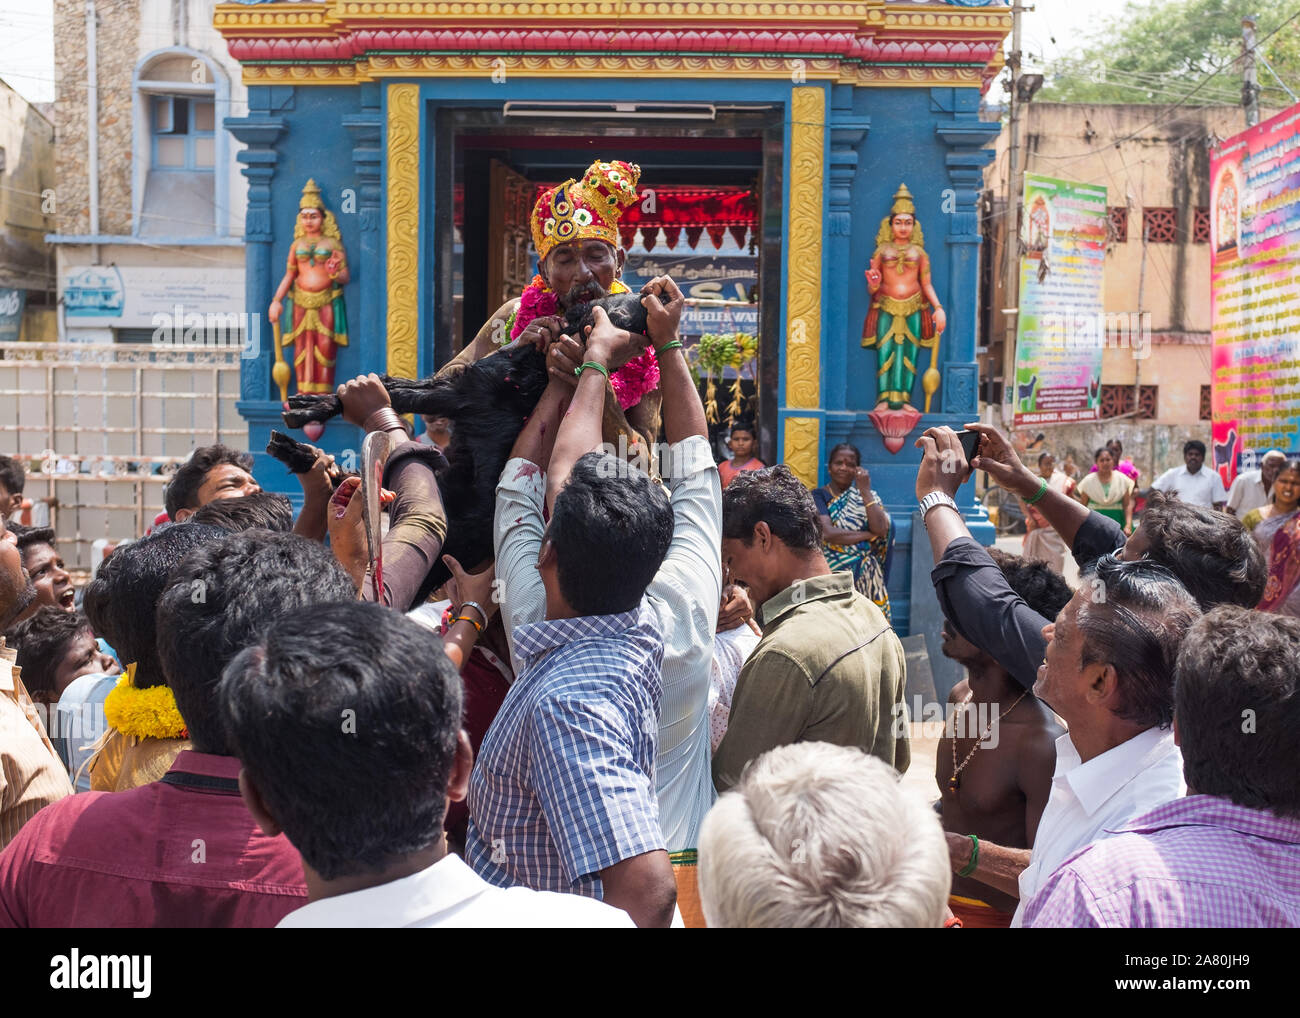 Sacerdote sulle spalle dei devoti morde la gola del giovane capra a bere il sangue durante la Kutti Kudithal Festival di Trichy, Tamil Nadu, India Foto Stock